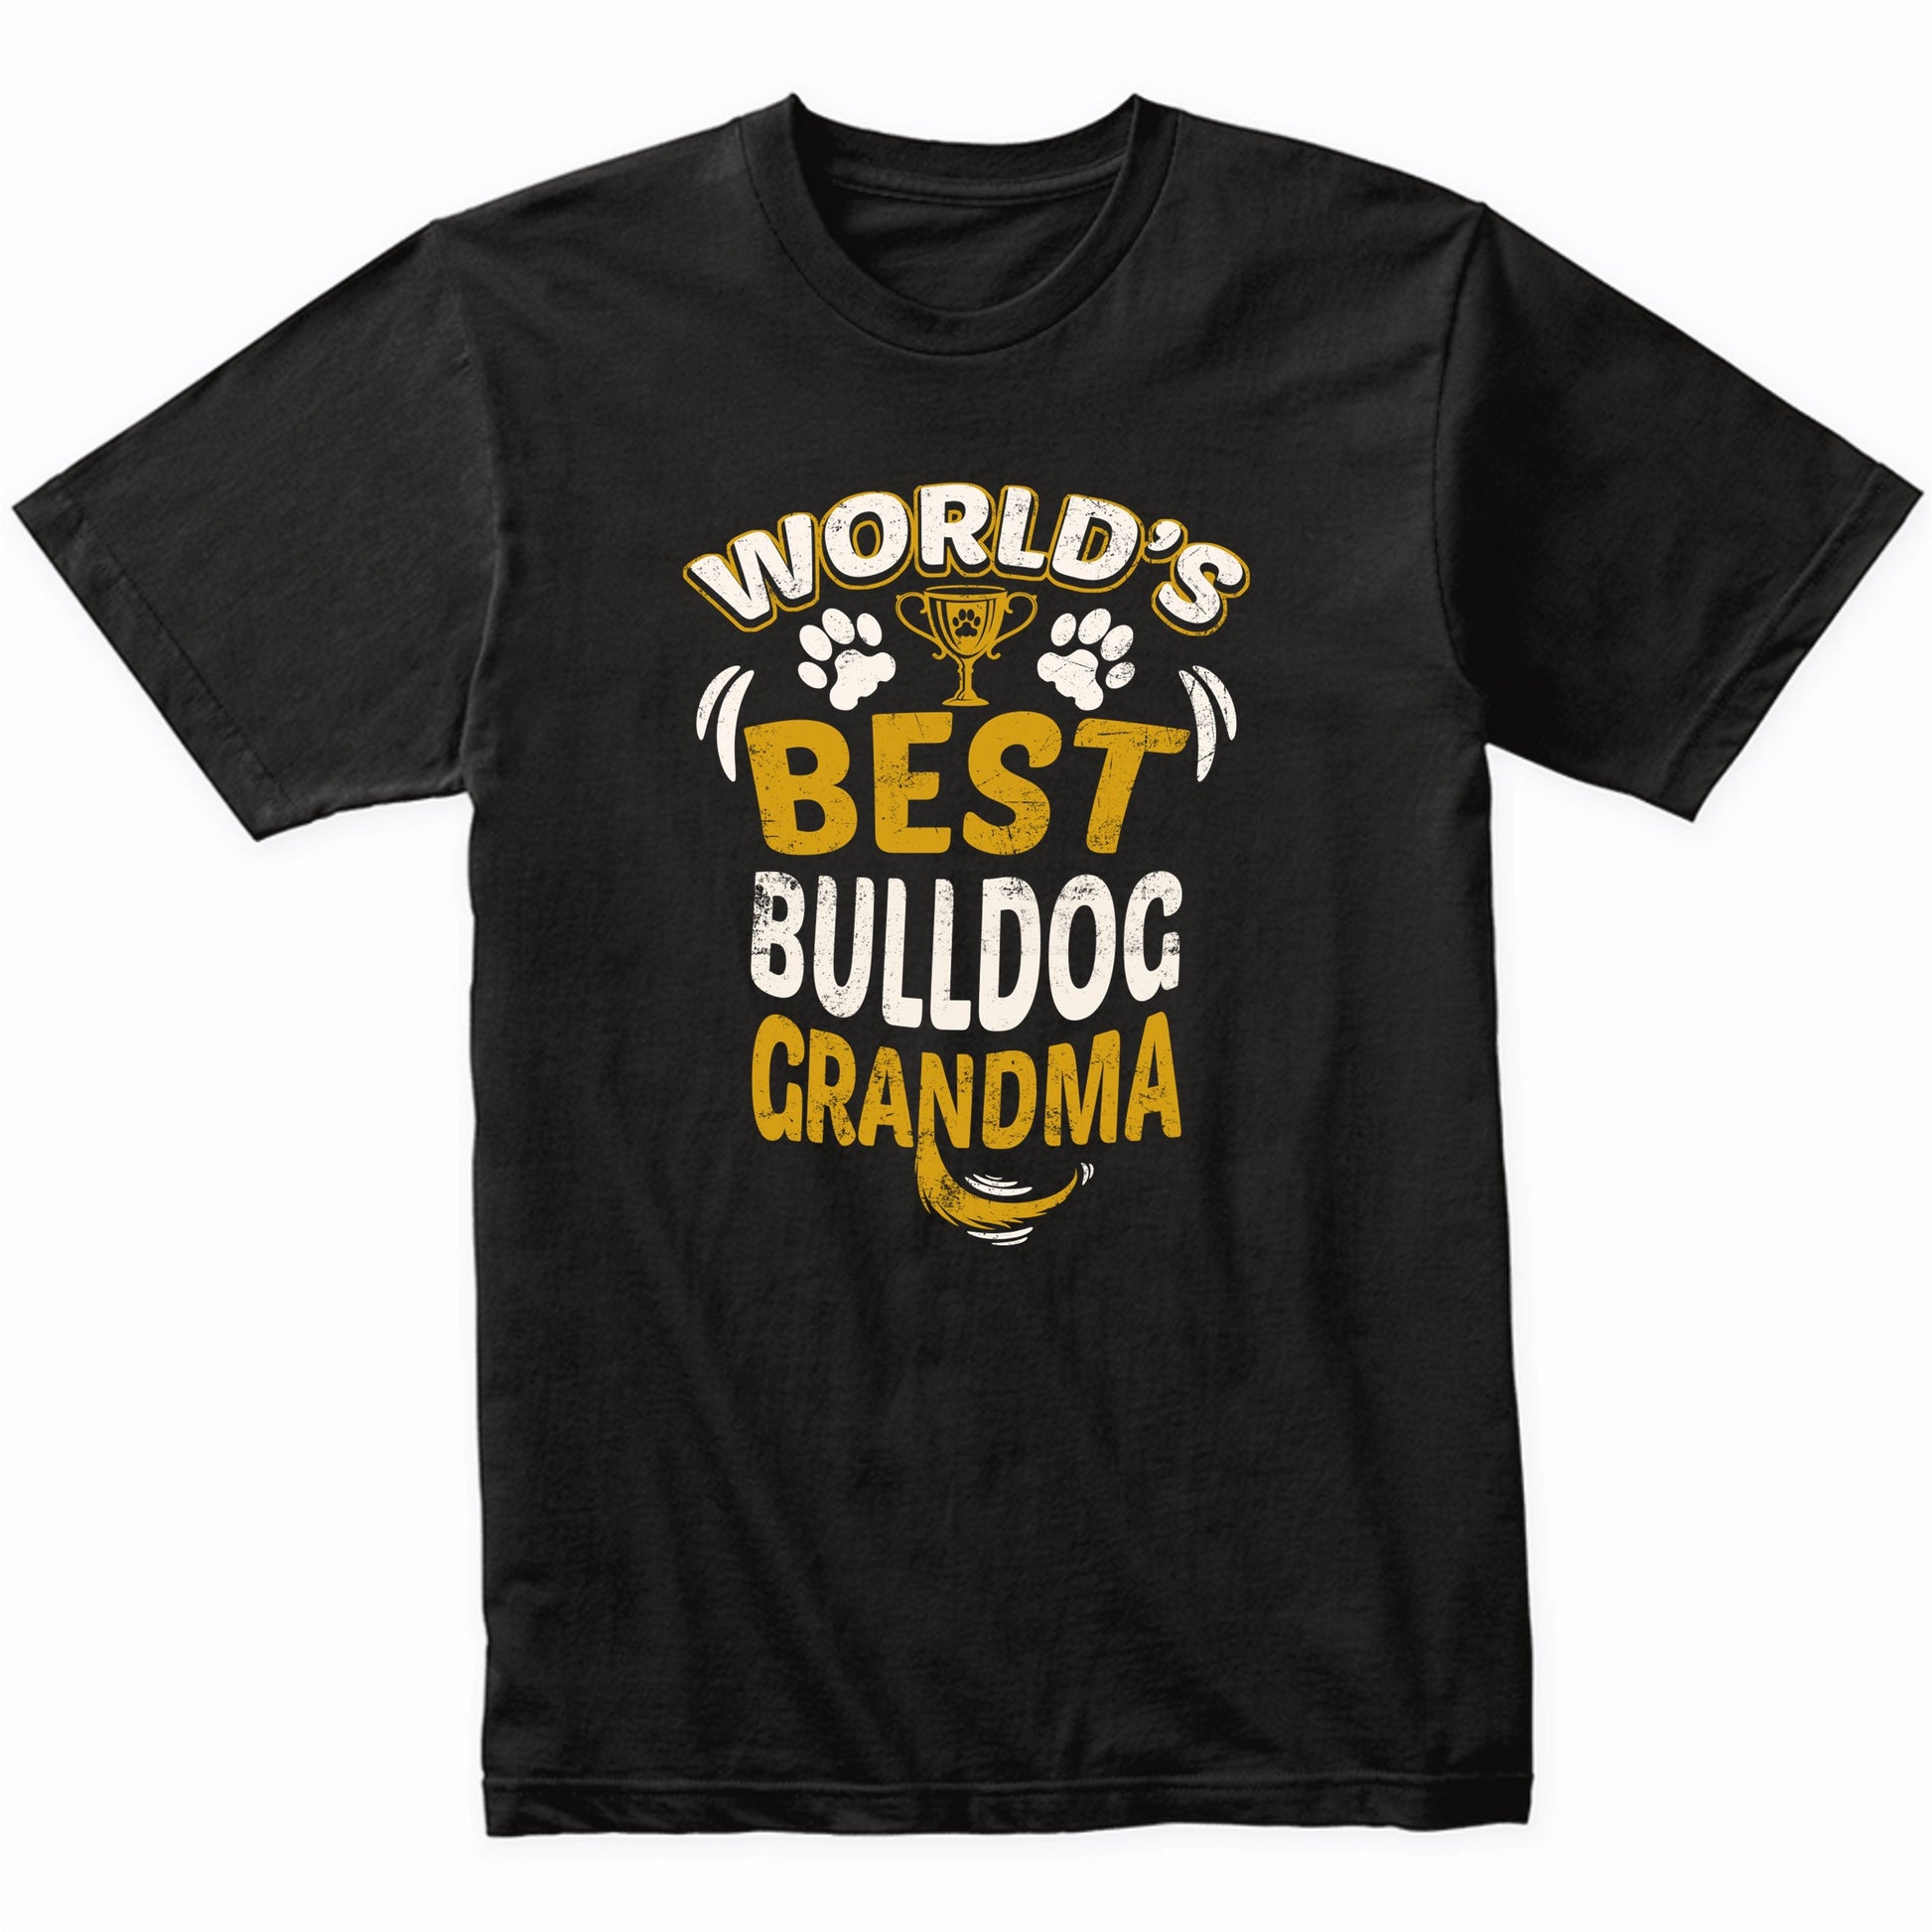 World's Best Bulldog Grandma Graphic T-Shirt